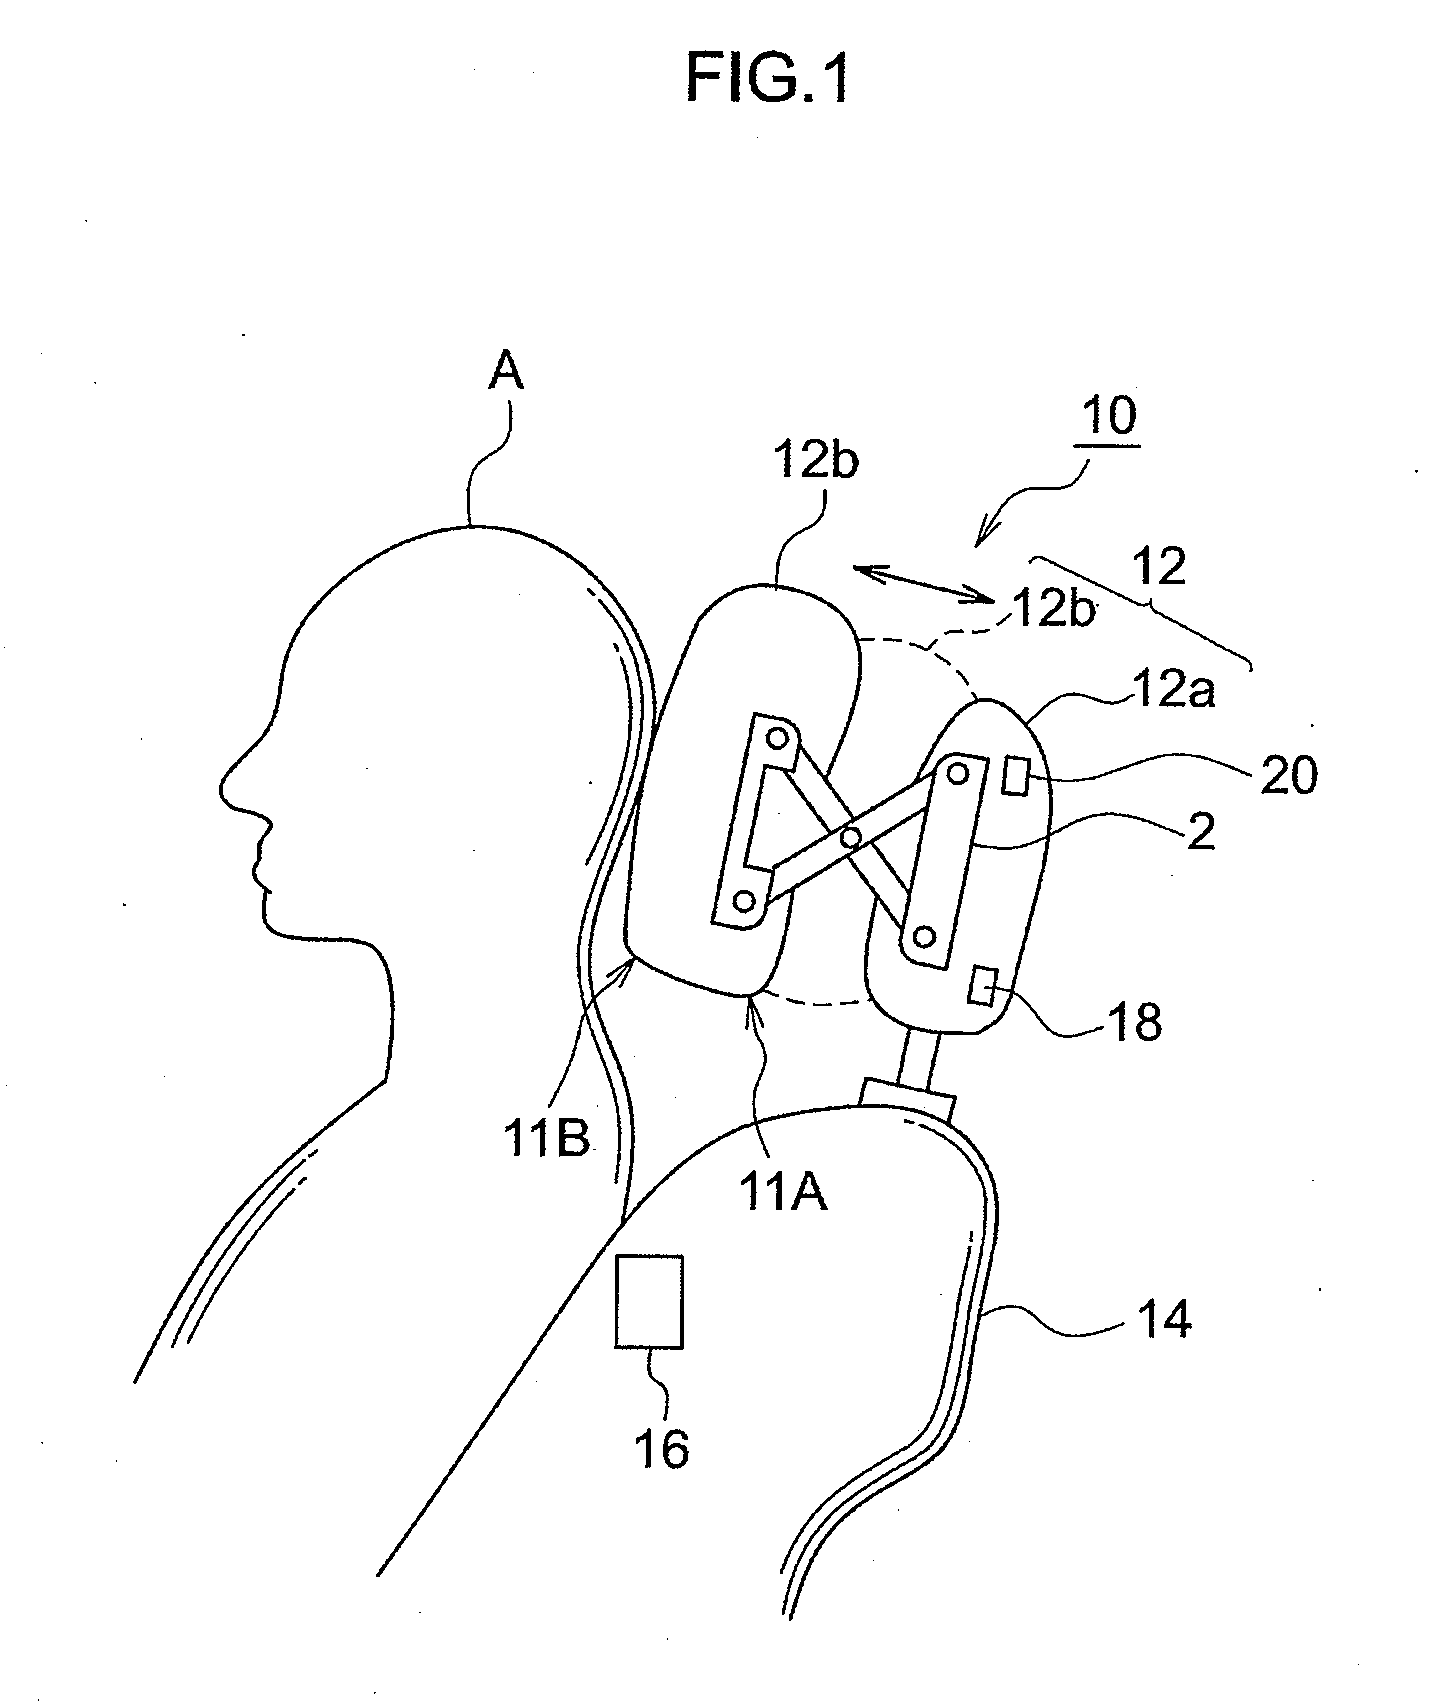 Headrest device, method of adjusting headrest positiion, and vehicle seat